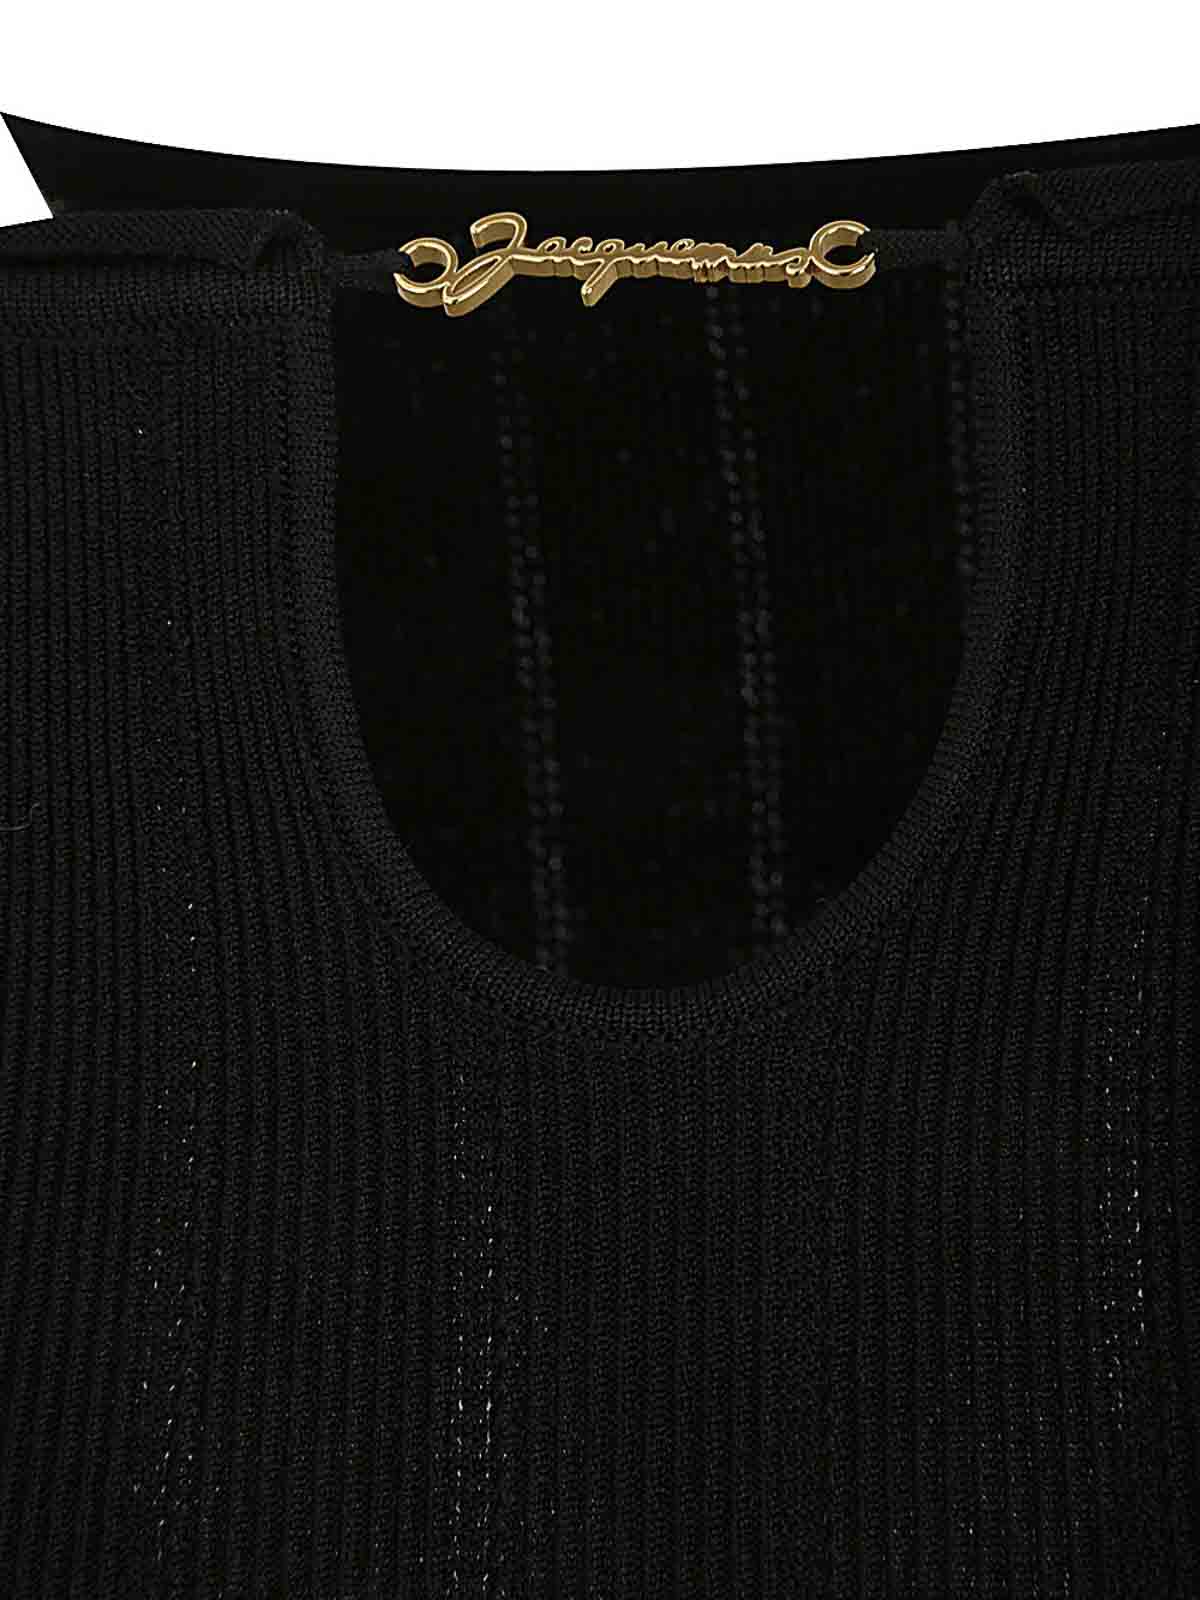 Shop Jacquemus Midi Black Dress